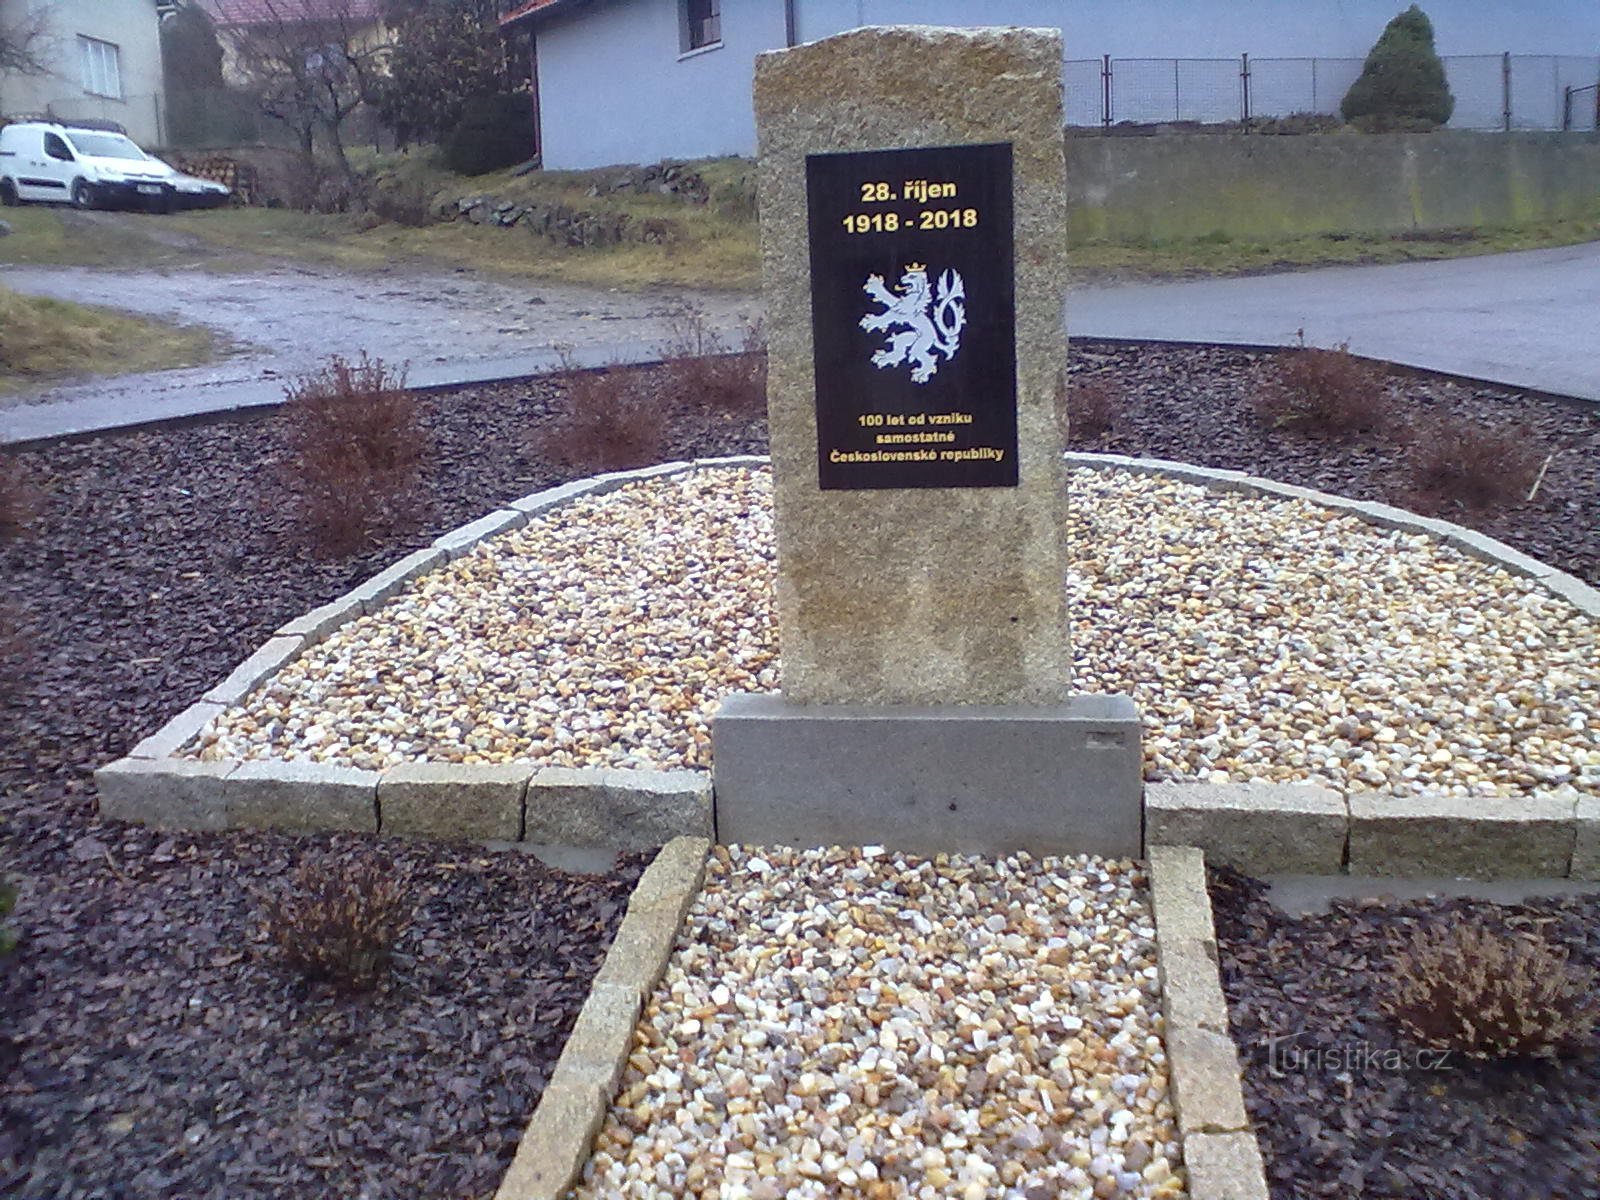 O monumento ao estabelecimento da república em Vokov.